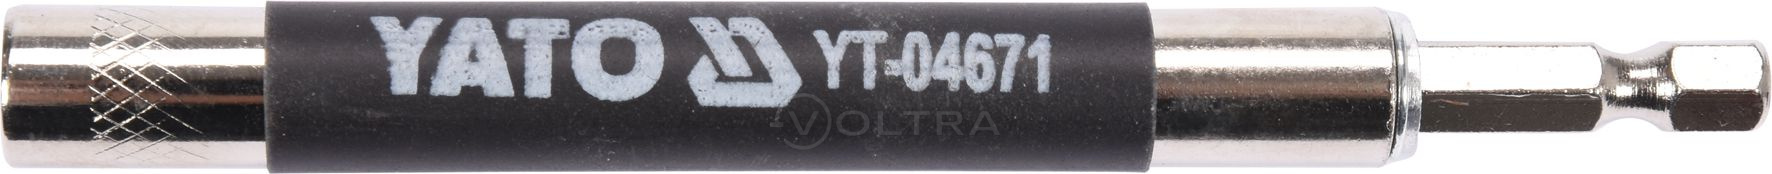 Держатель магнитный 120мм для бит 1/4" Yato YT-04671